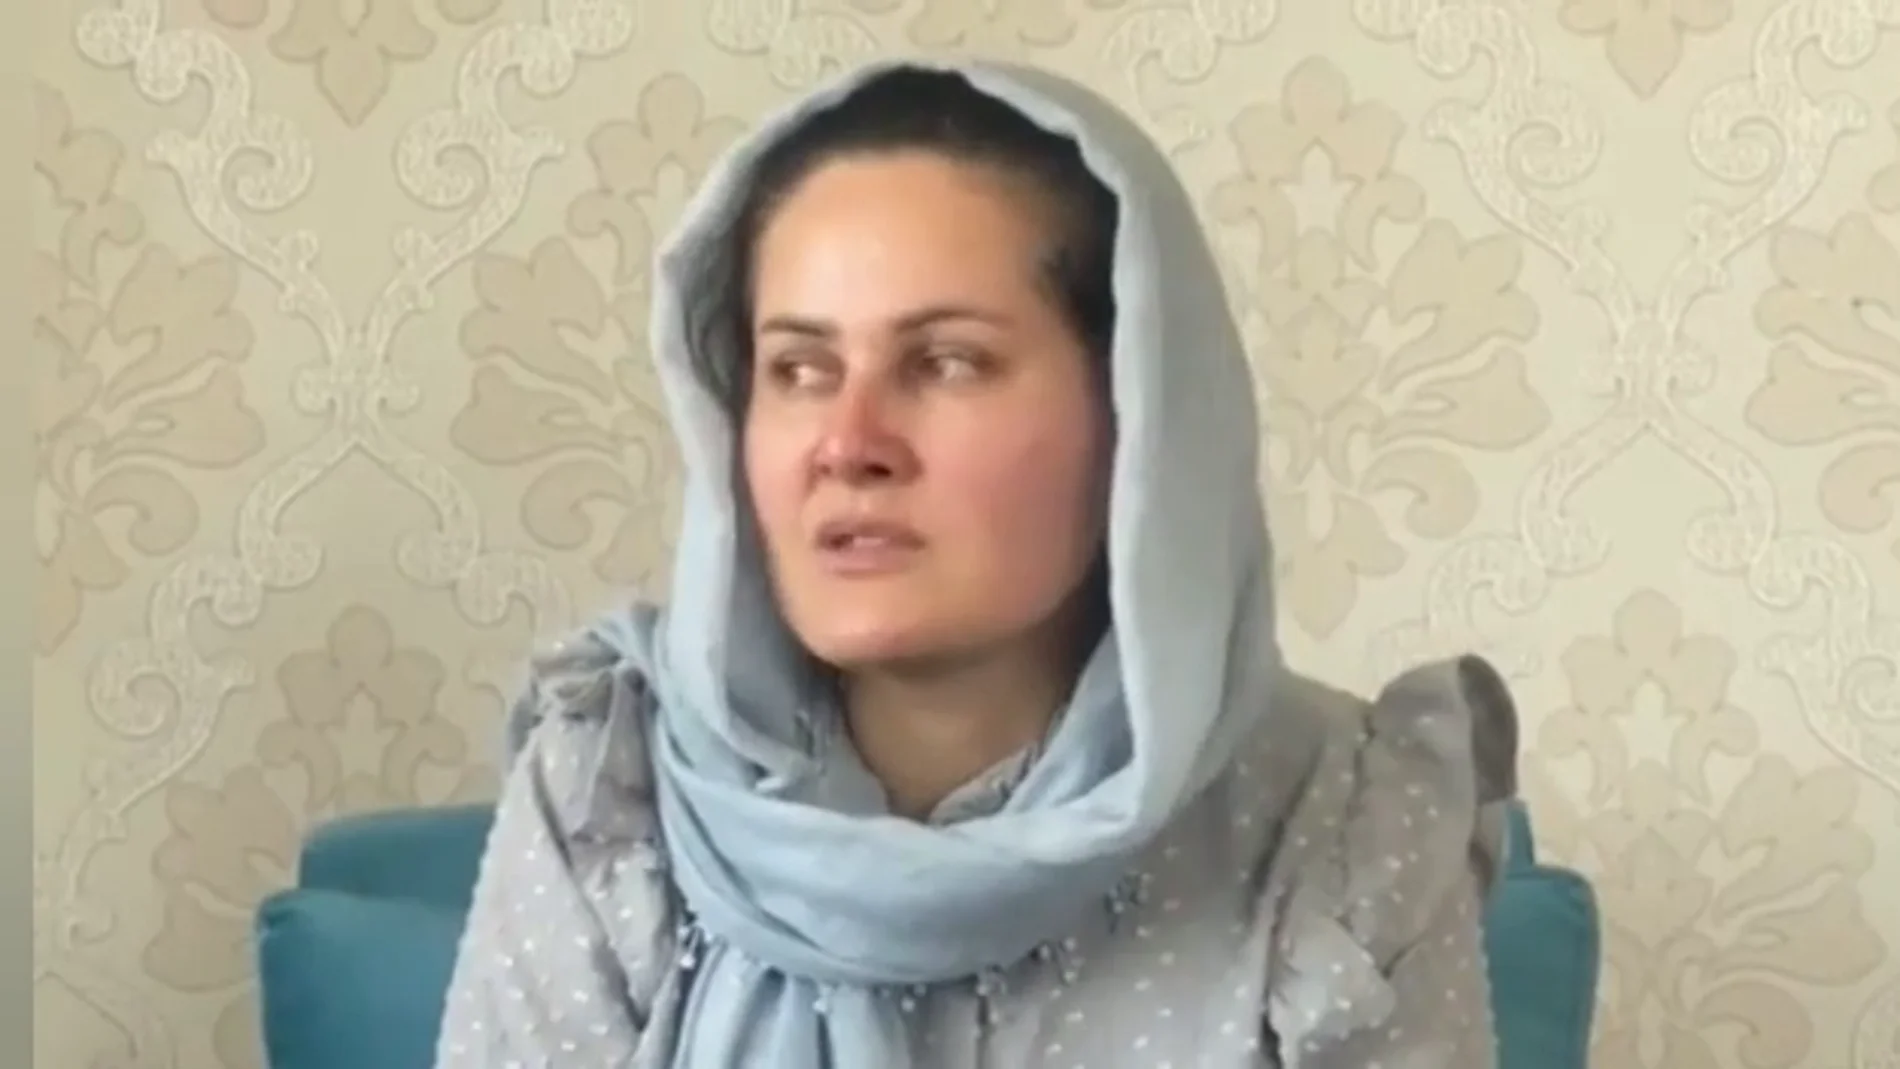 La cineasta Sahraa Karimi pide ayuda para huir de los talibanes: "No se queden callados, vienen a matarnos".La cineasta Sahraa Karimi pide ayuda para huir de los talibanes: "No se queden callados, vienen a matarnos".